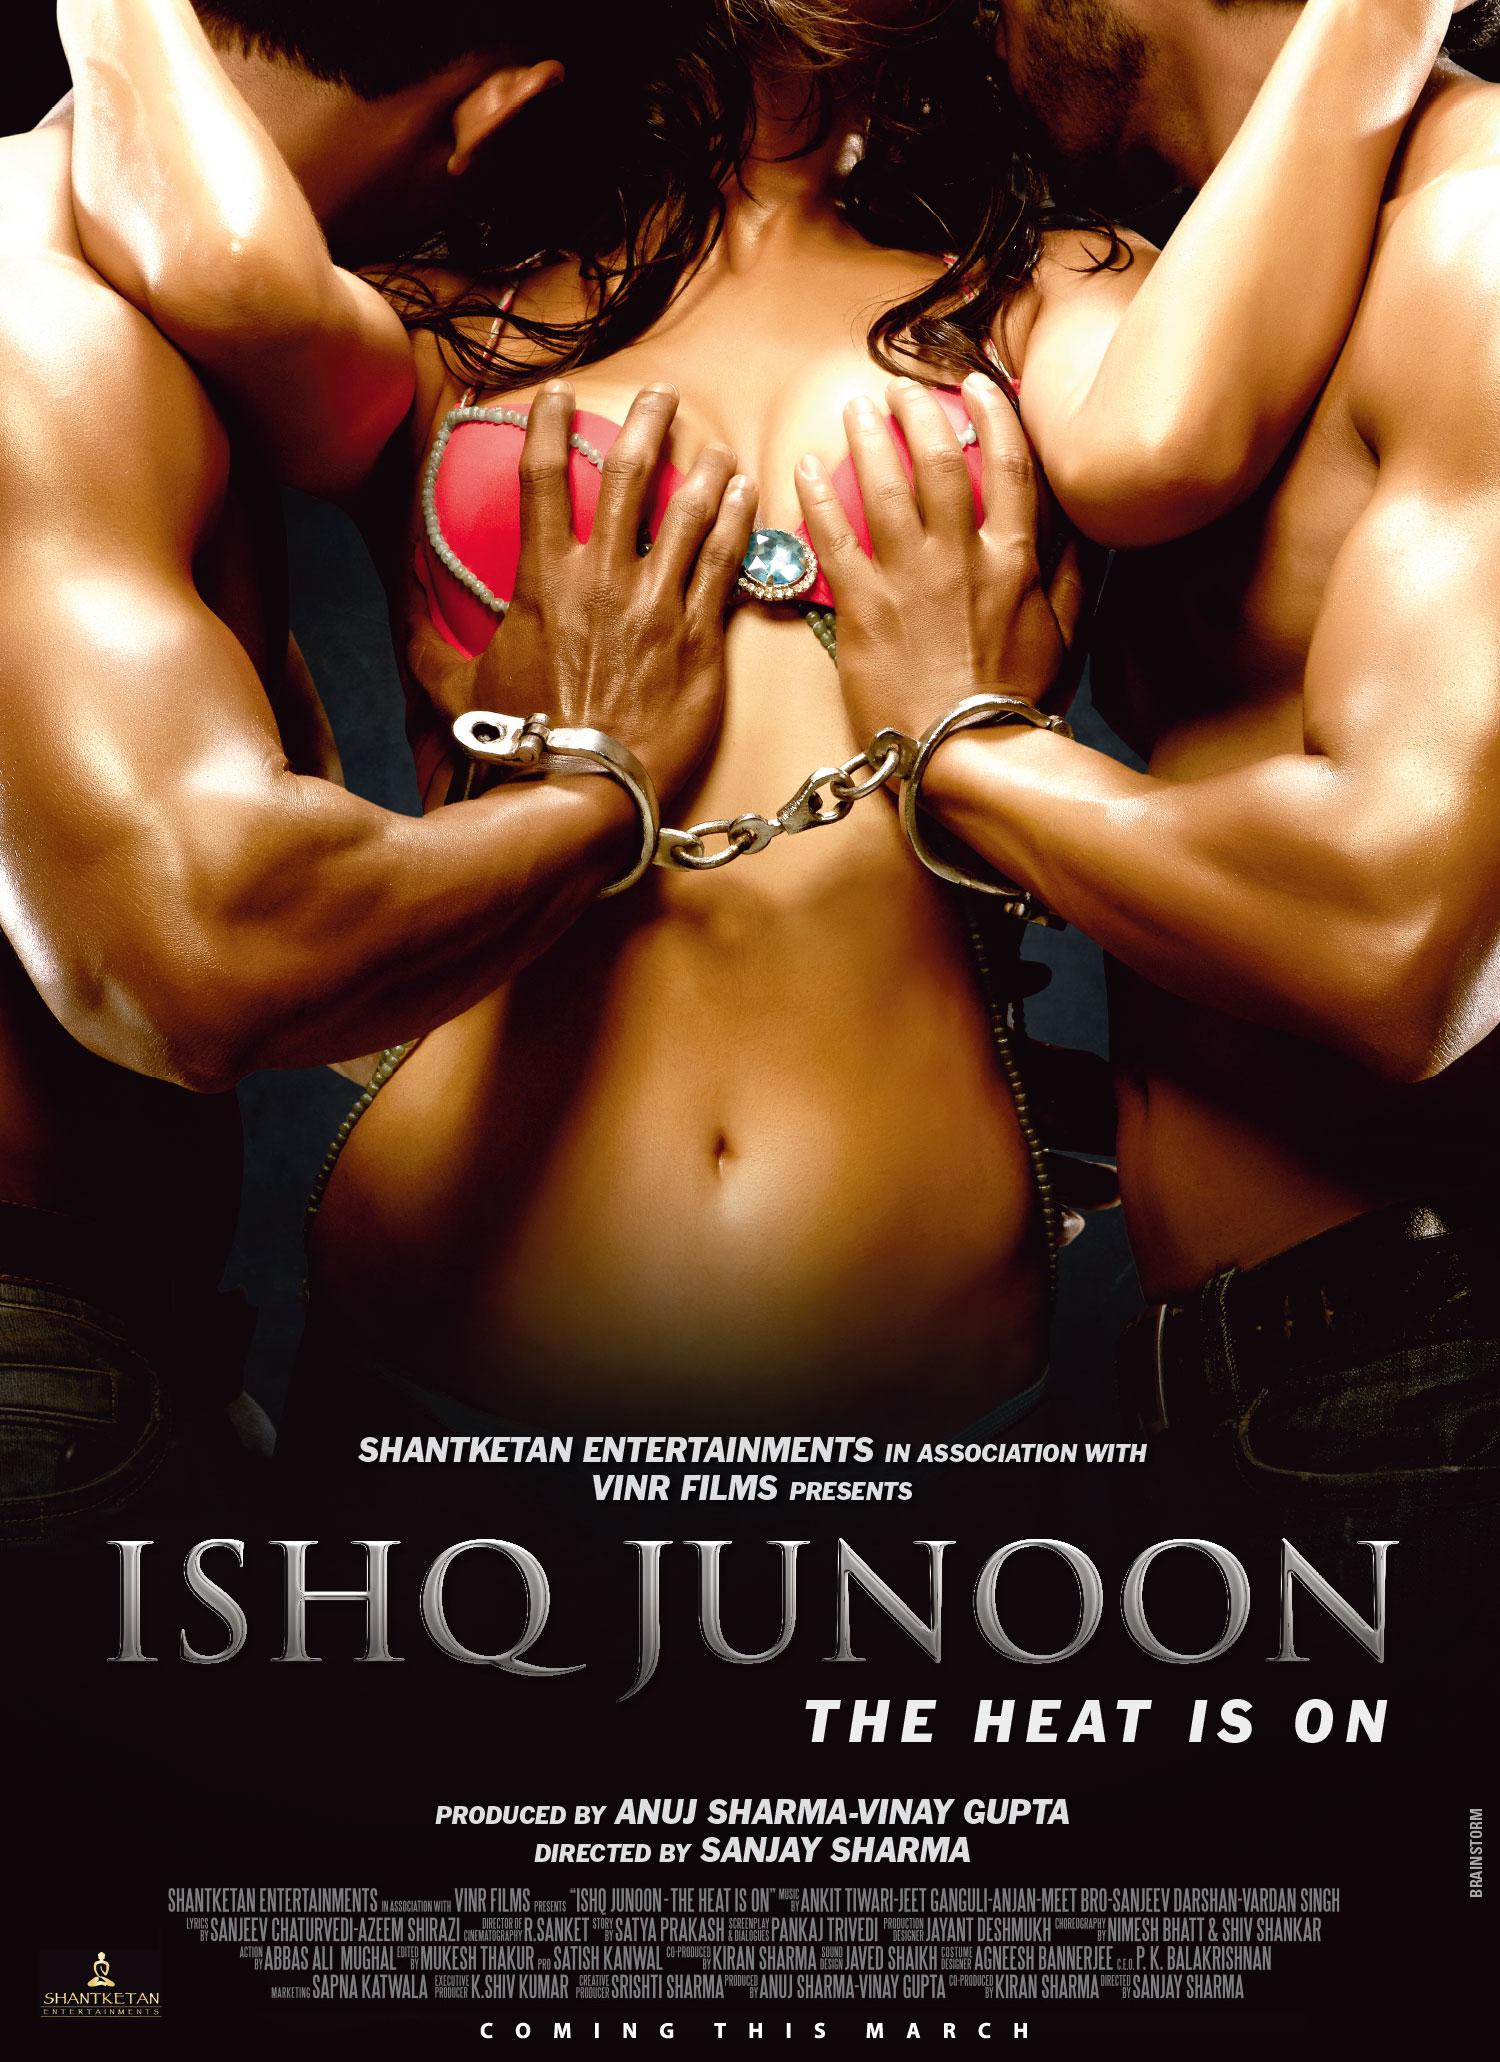 Erotic movies in india